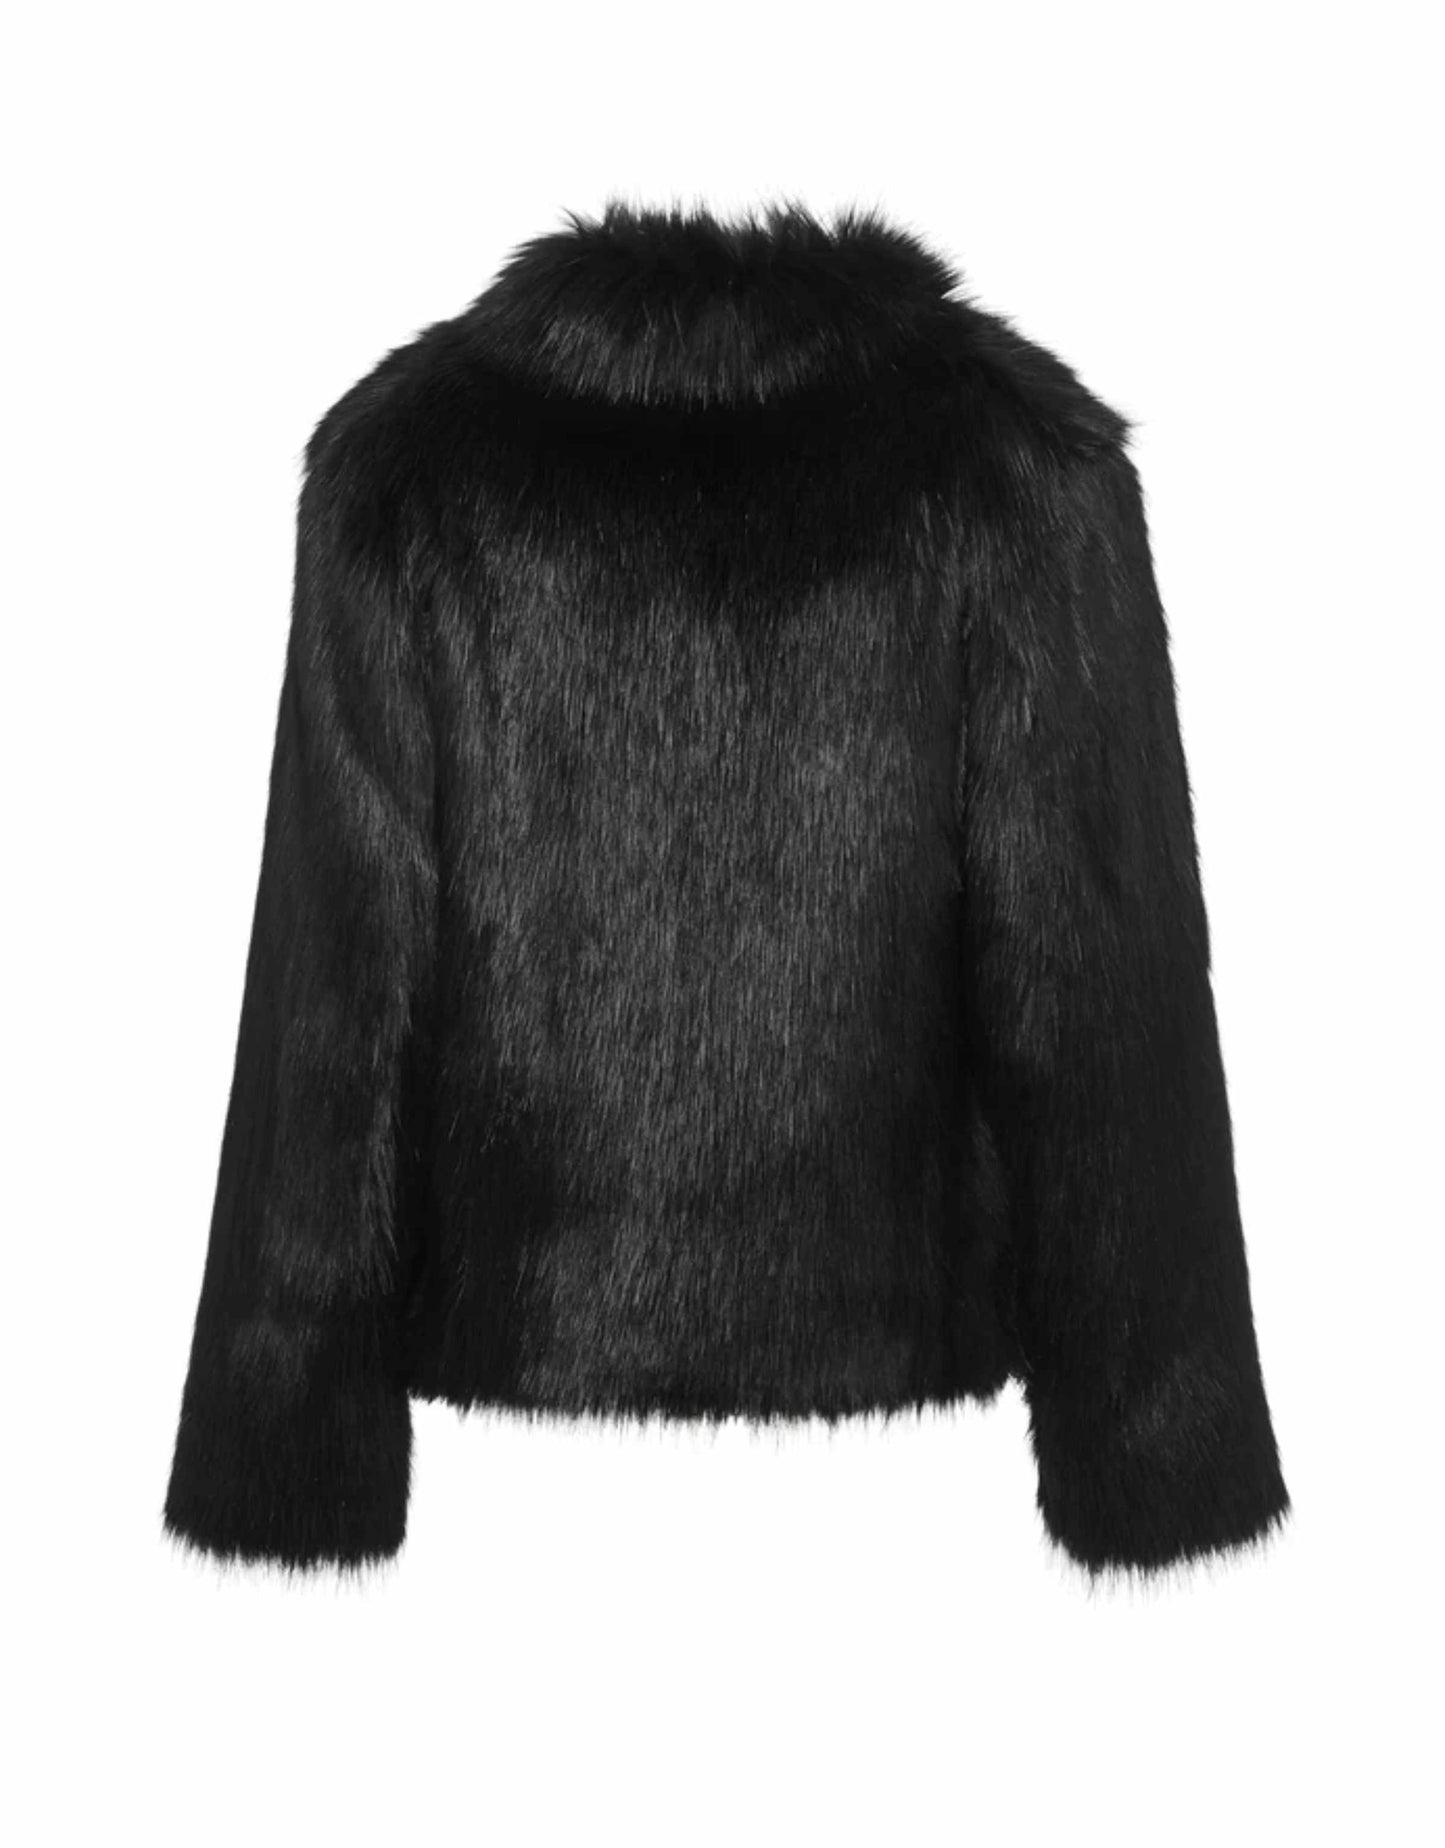 Unreal Fur - Fur Delish, Black